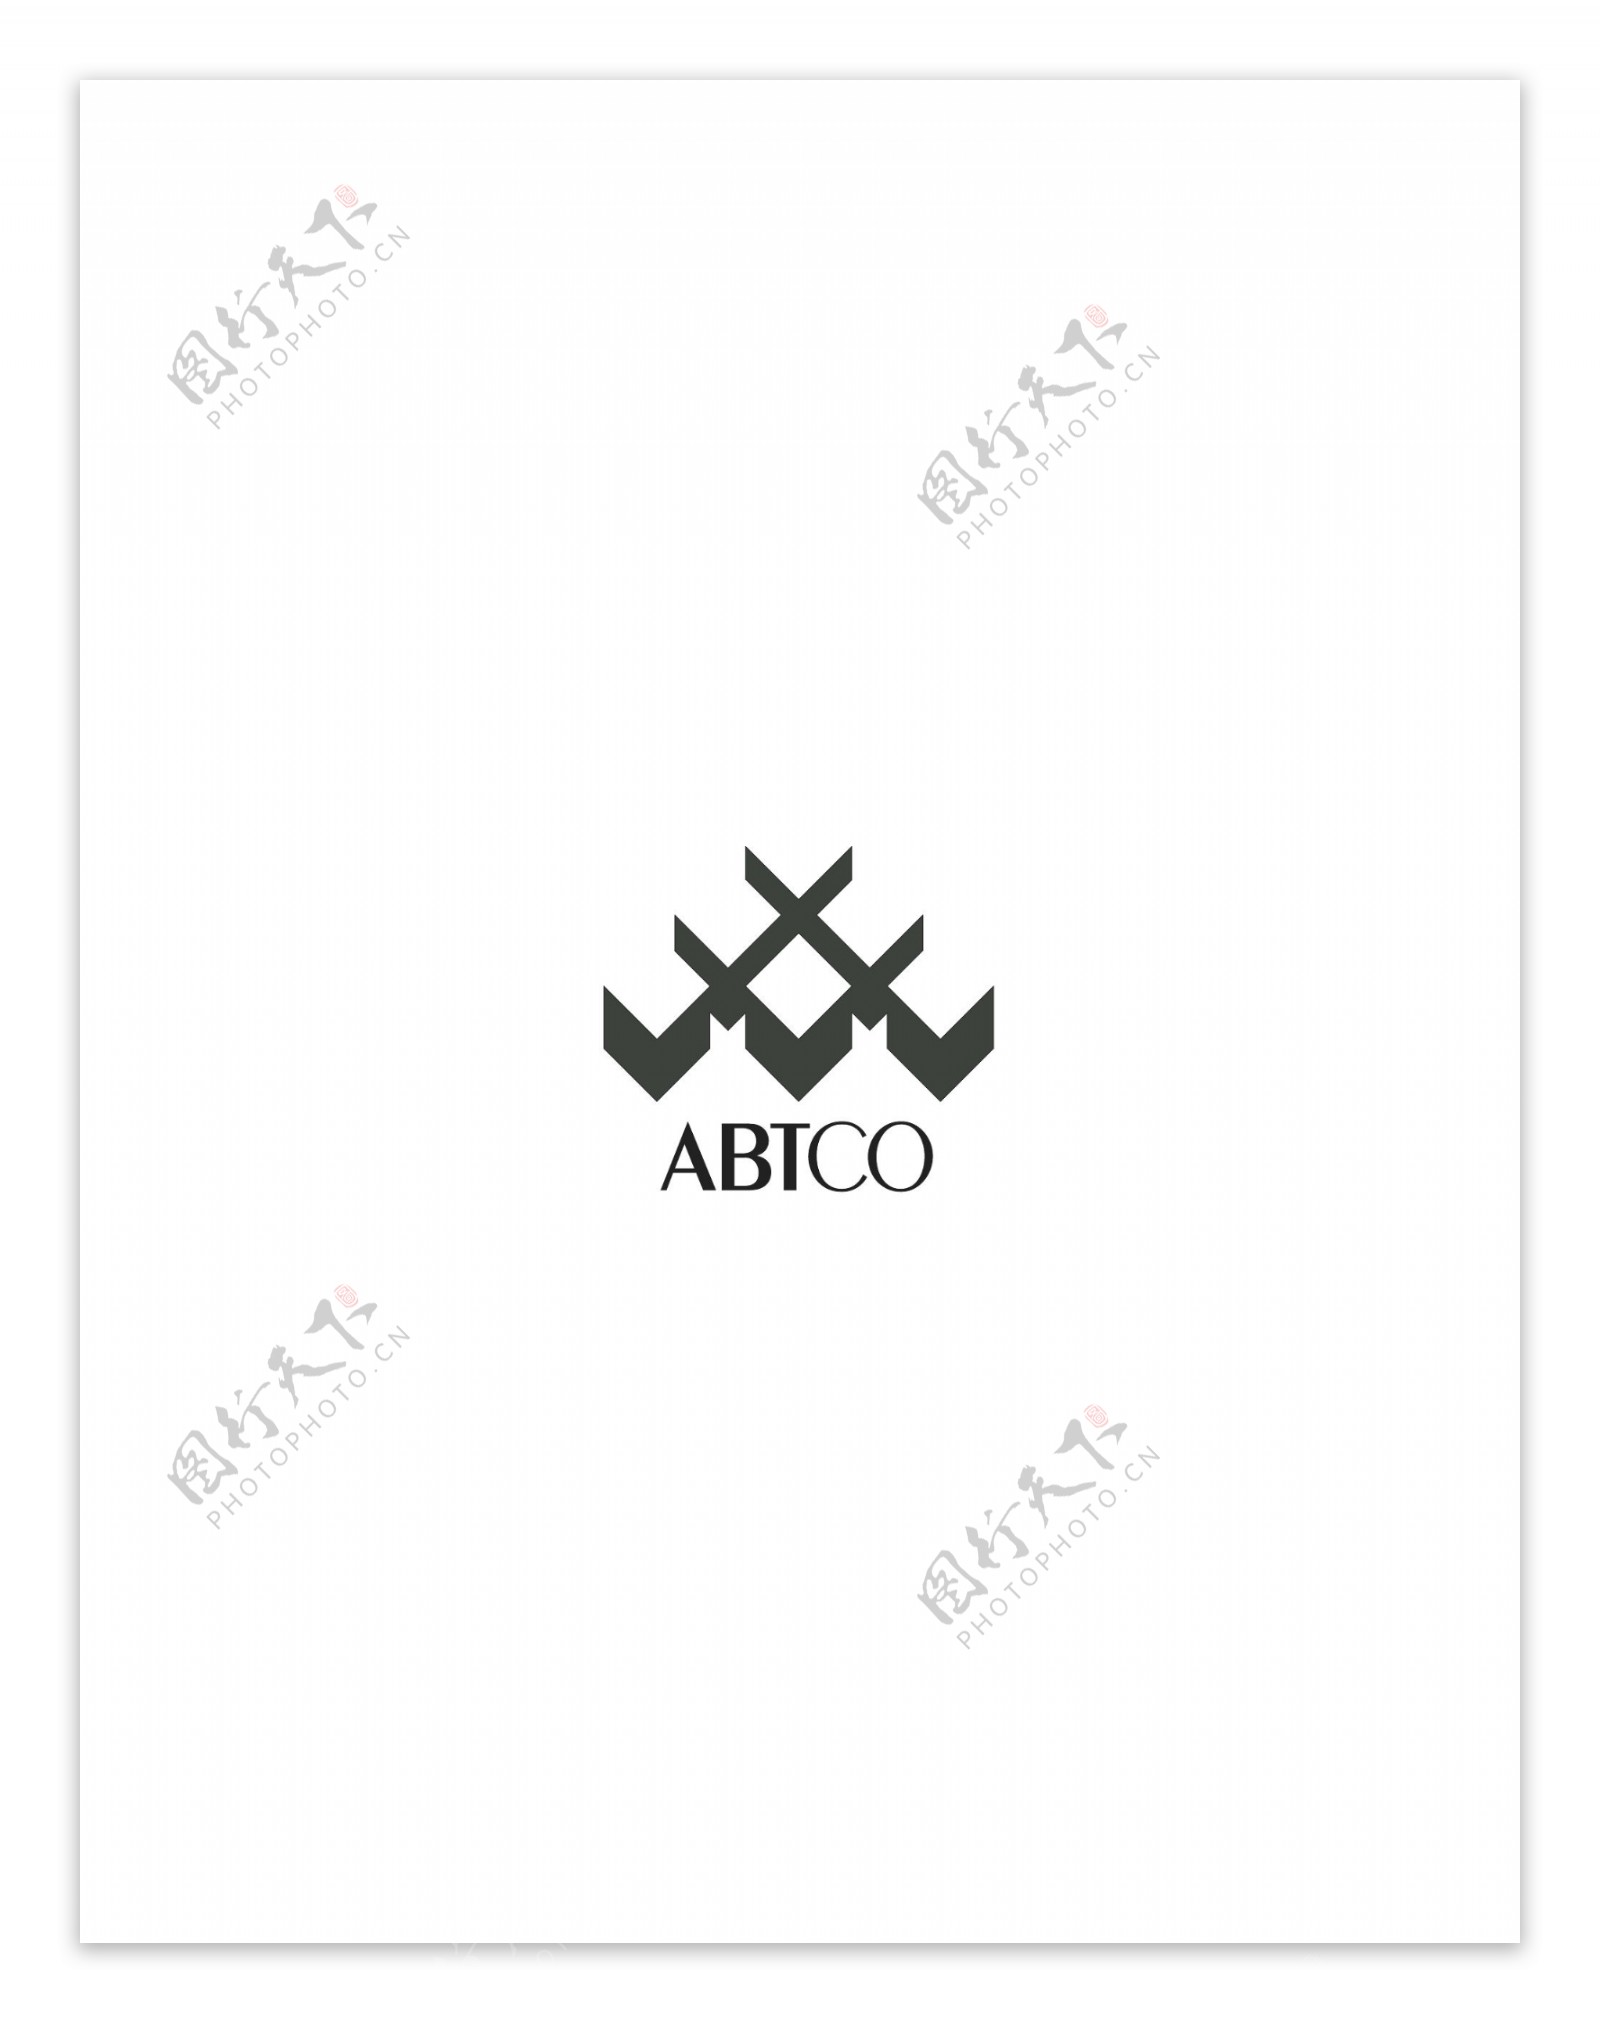 ABTCologo设计欣赏IT高科技公司标志ABTCo下载标志设计欣赏